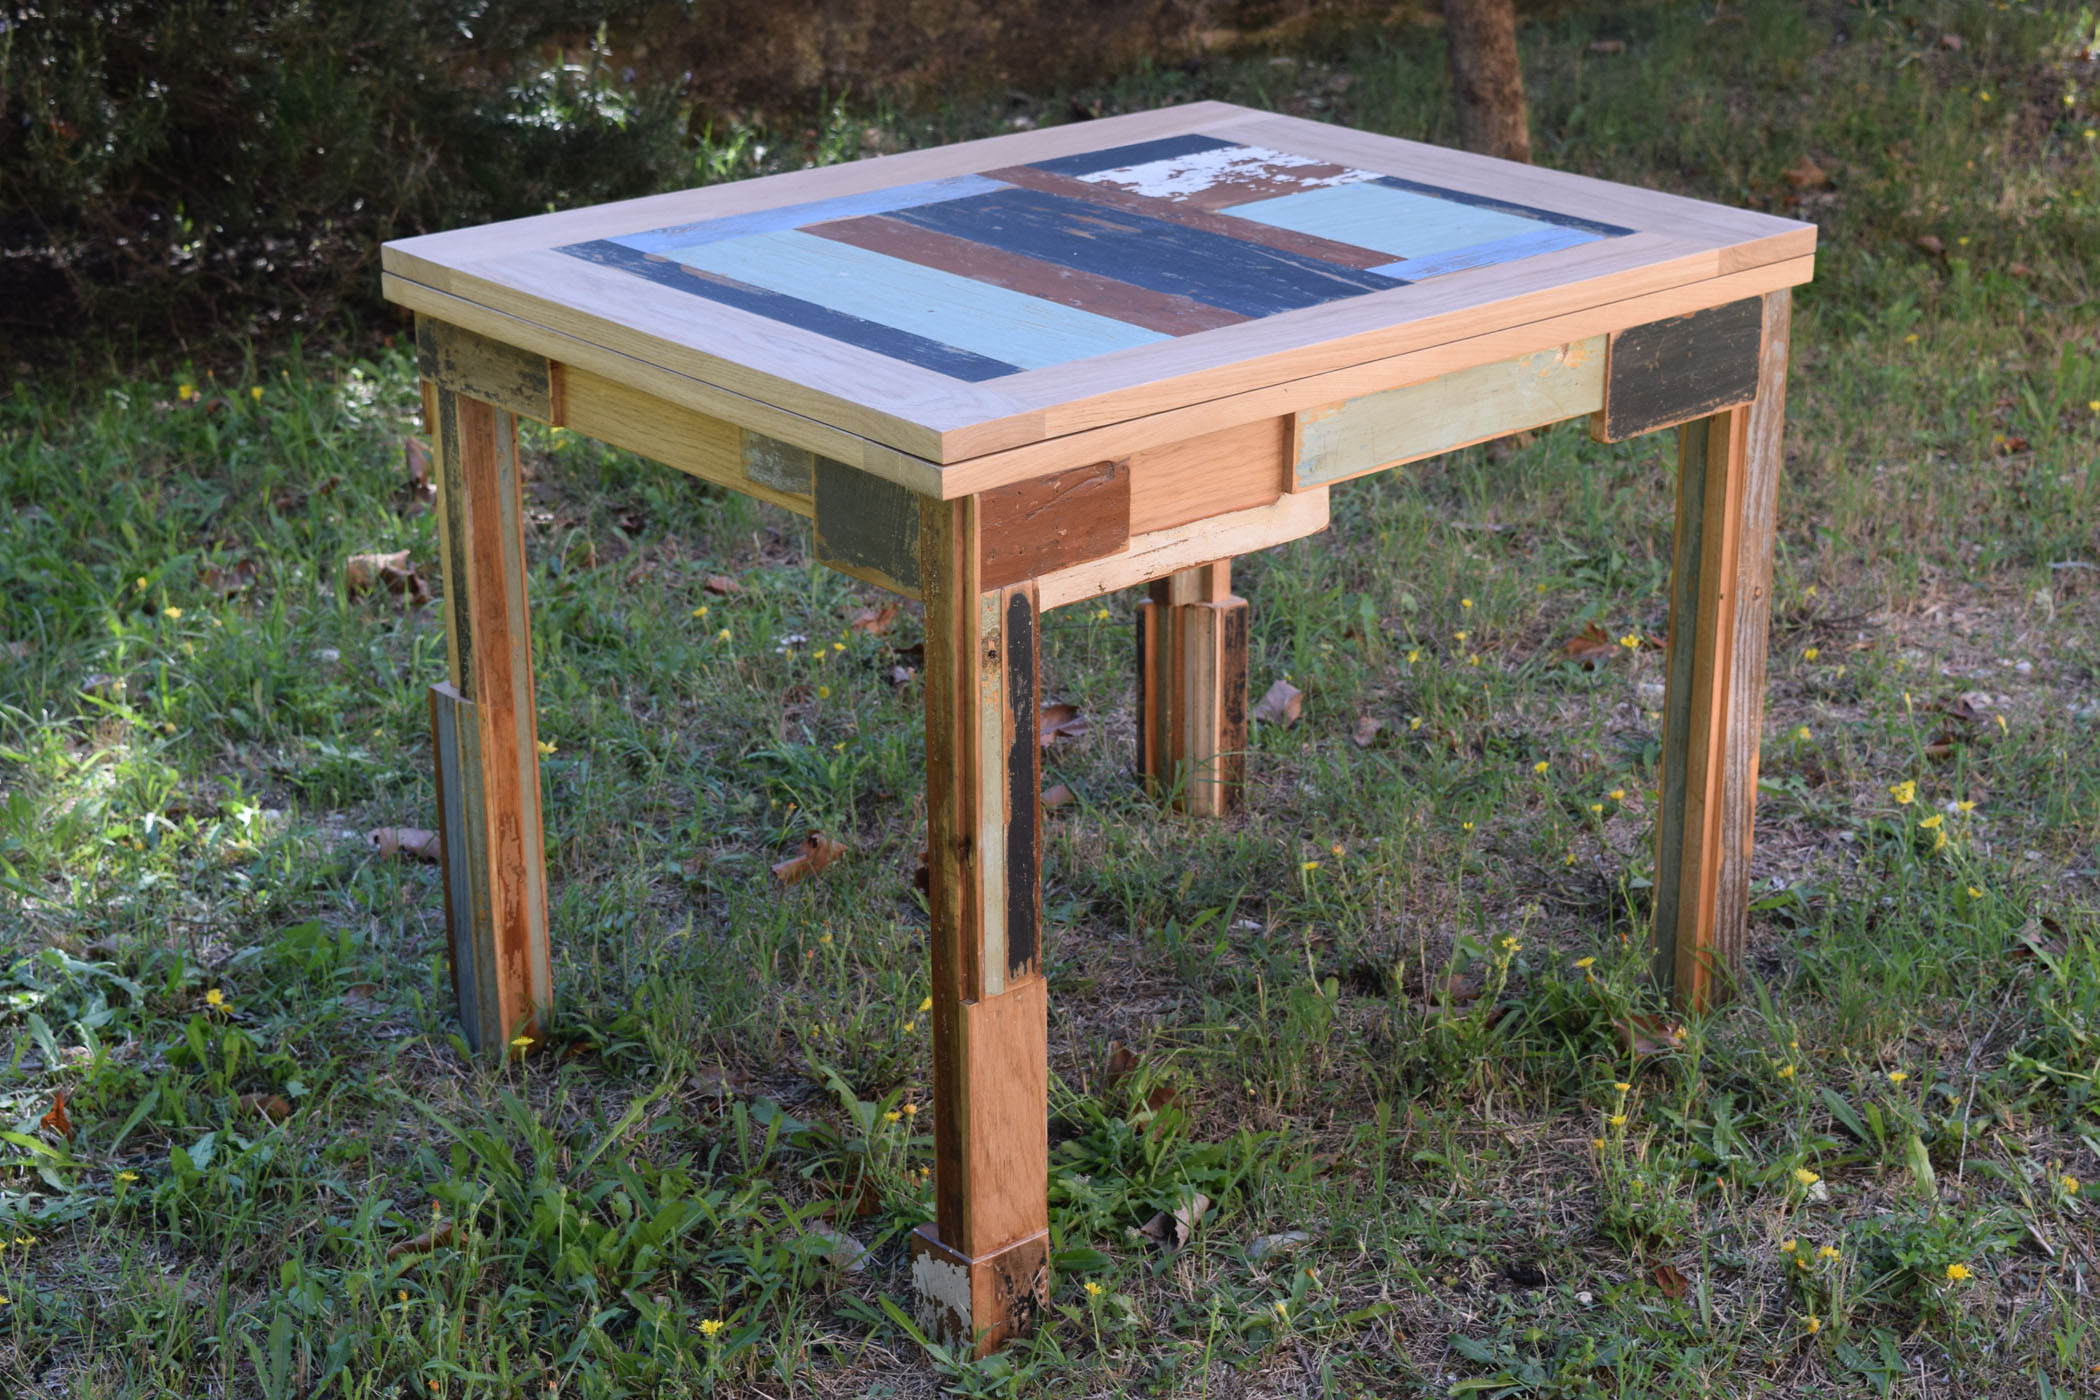 Tavolo allungabile interamente in legno di rovere massello con inserti di legno di recupero colorato. Piano del tavolo doppio e ribaltabile